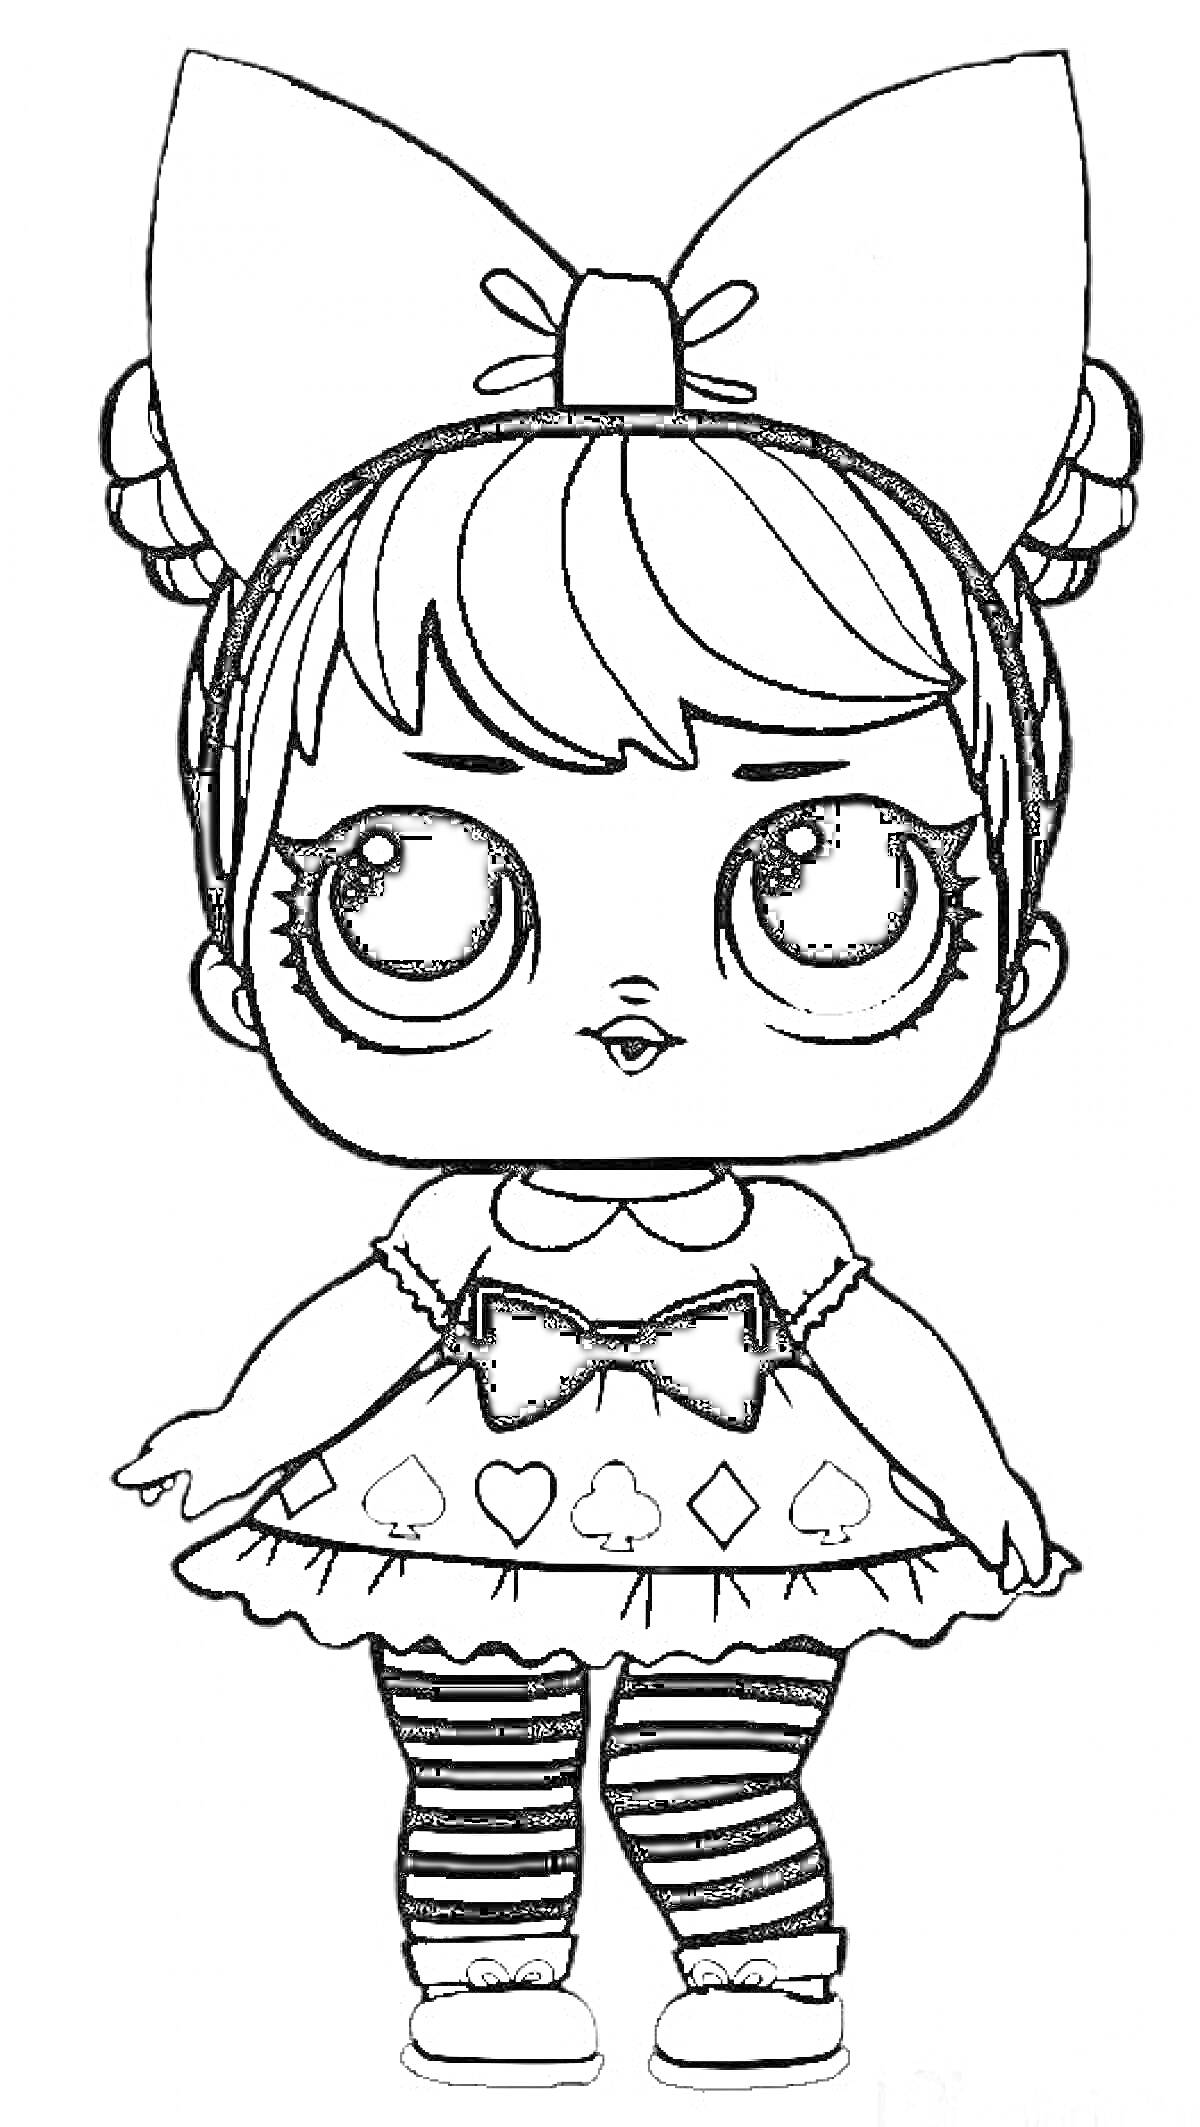 Раскраска Кукла Лол с большим бантом на голове, в платье с покерными символами и в полосатых колготках